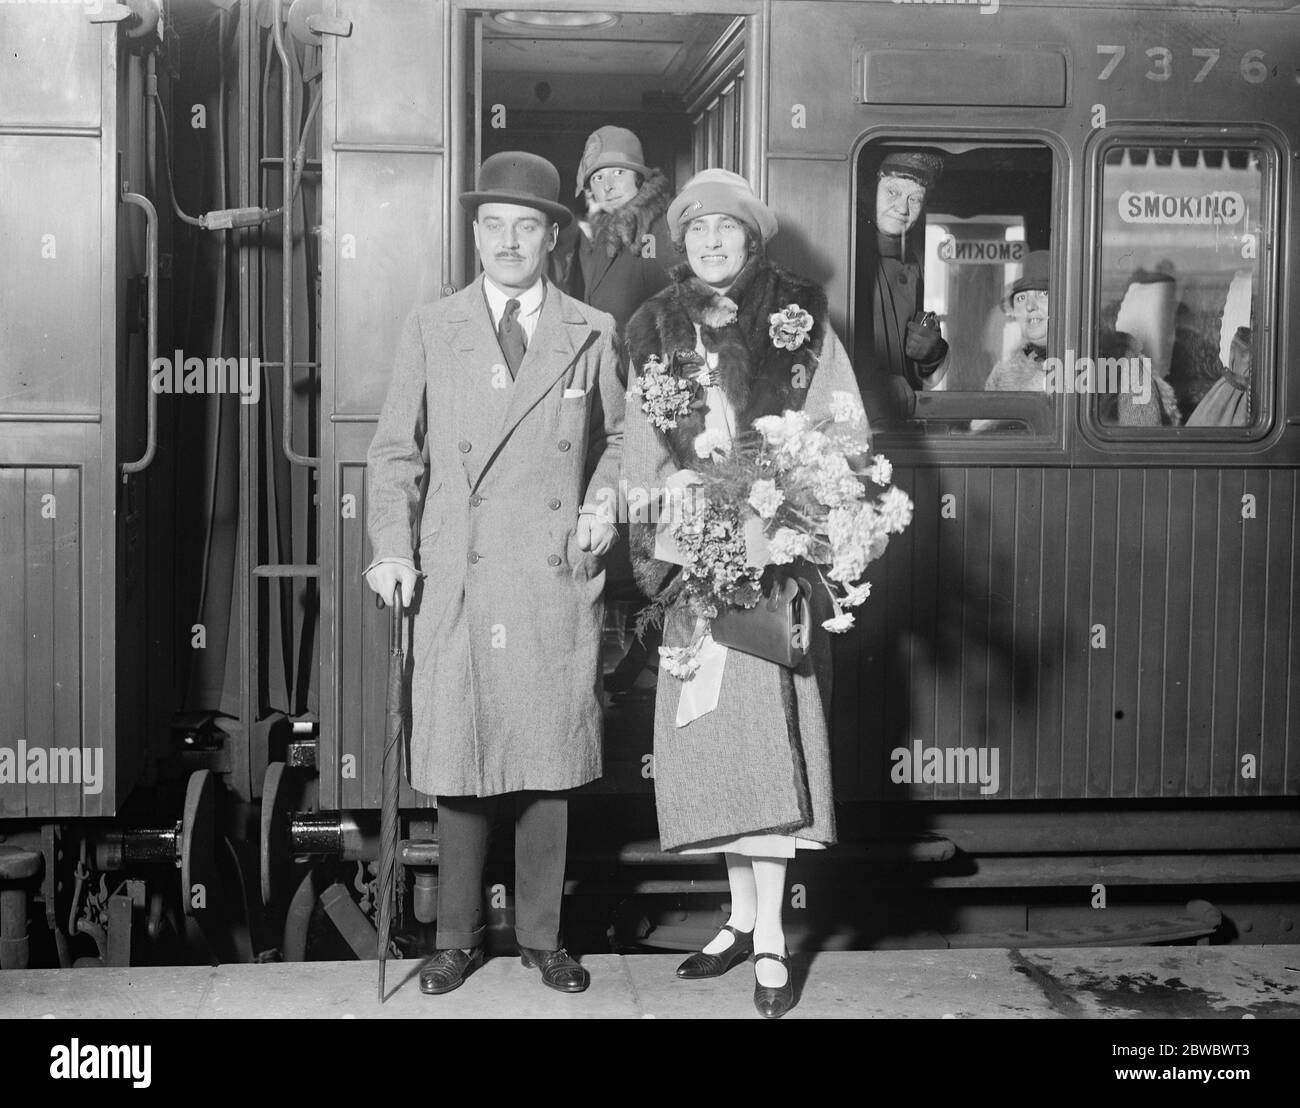 Neuer Hochkommissar geht nach Ägypten. Sir George Lloyd, der neue Hochkommissar für Ägypten, mit Lady Lloyd in Victoria auf dem Weg nach Ägypten. 12. Oktober 1925 Stockfoto